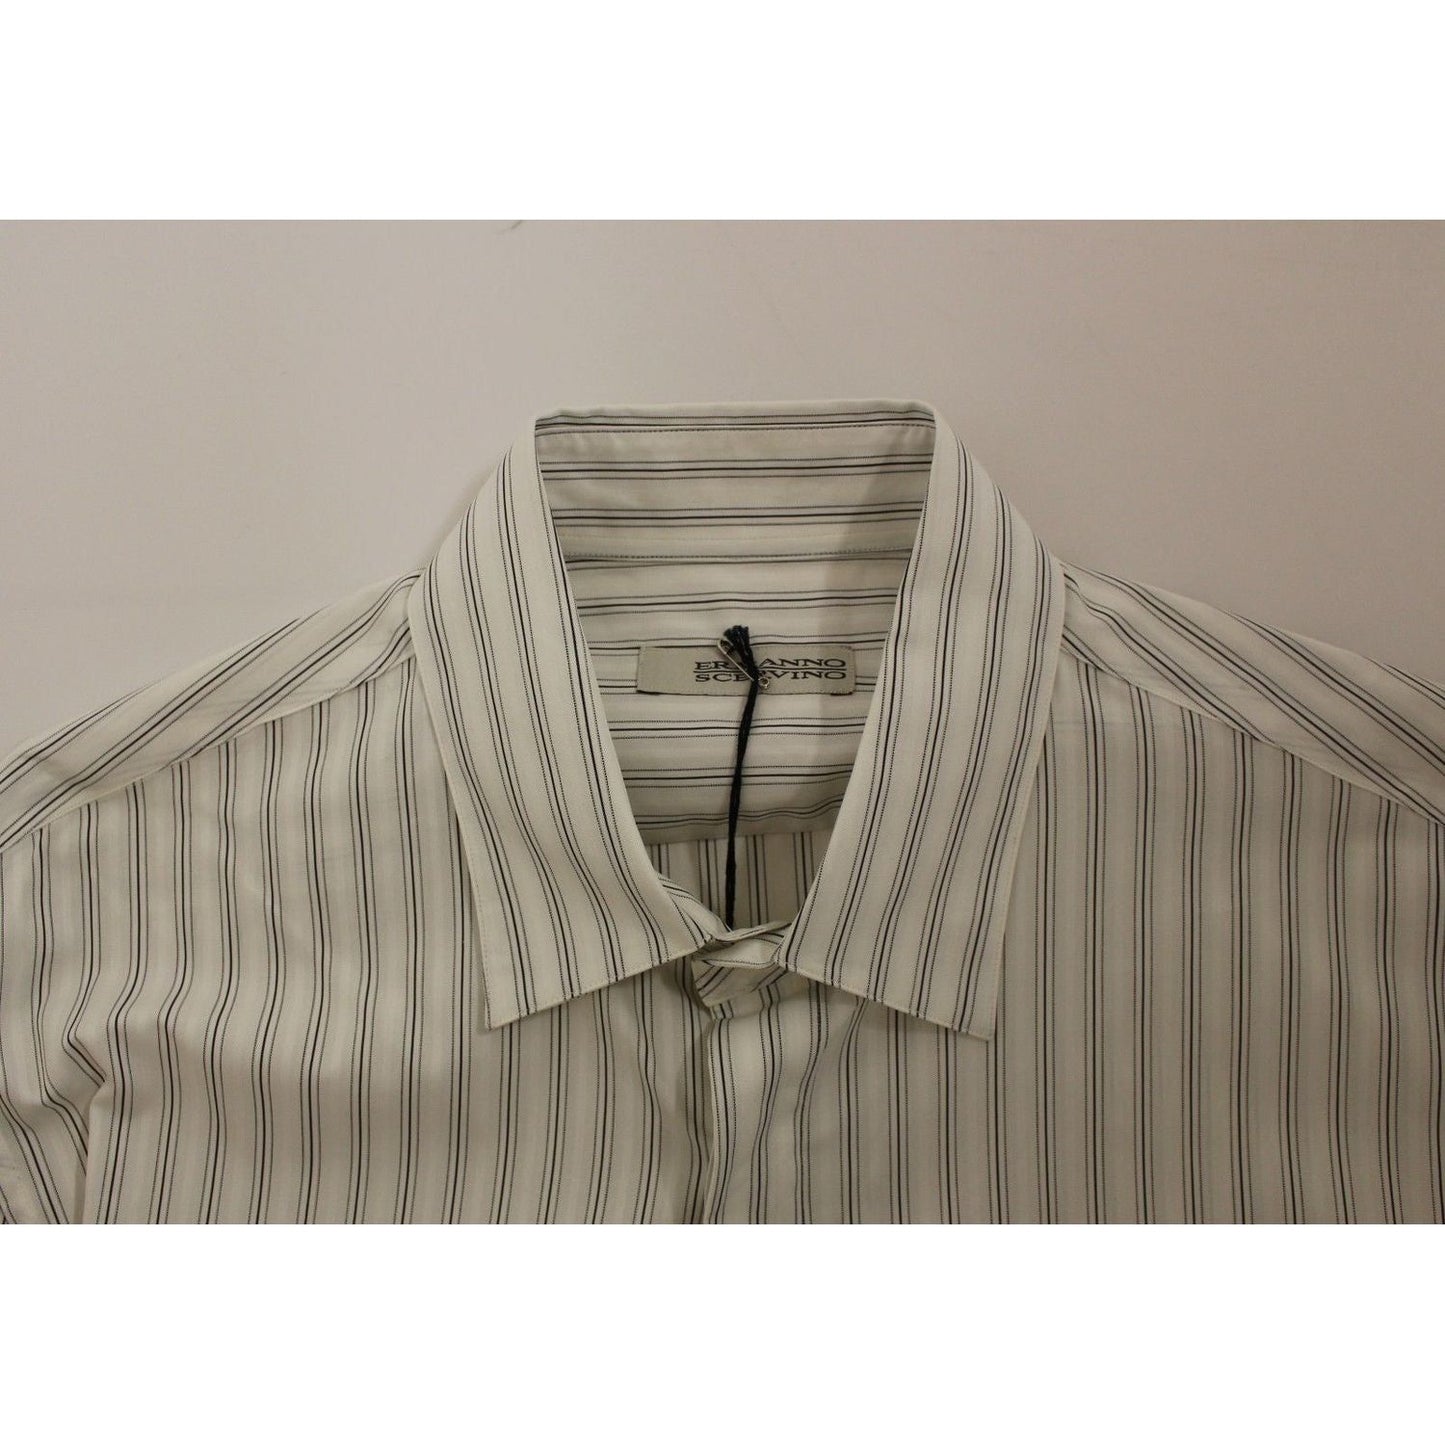 Ermanno ScervinoElegant Striped Cotton Casual ShirtMcRichard Designer Brands£179.00